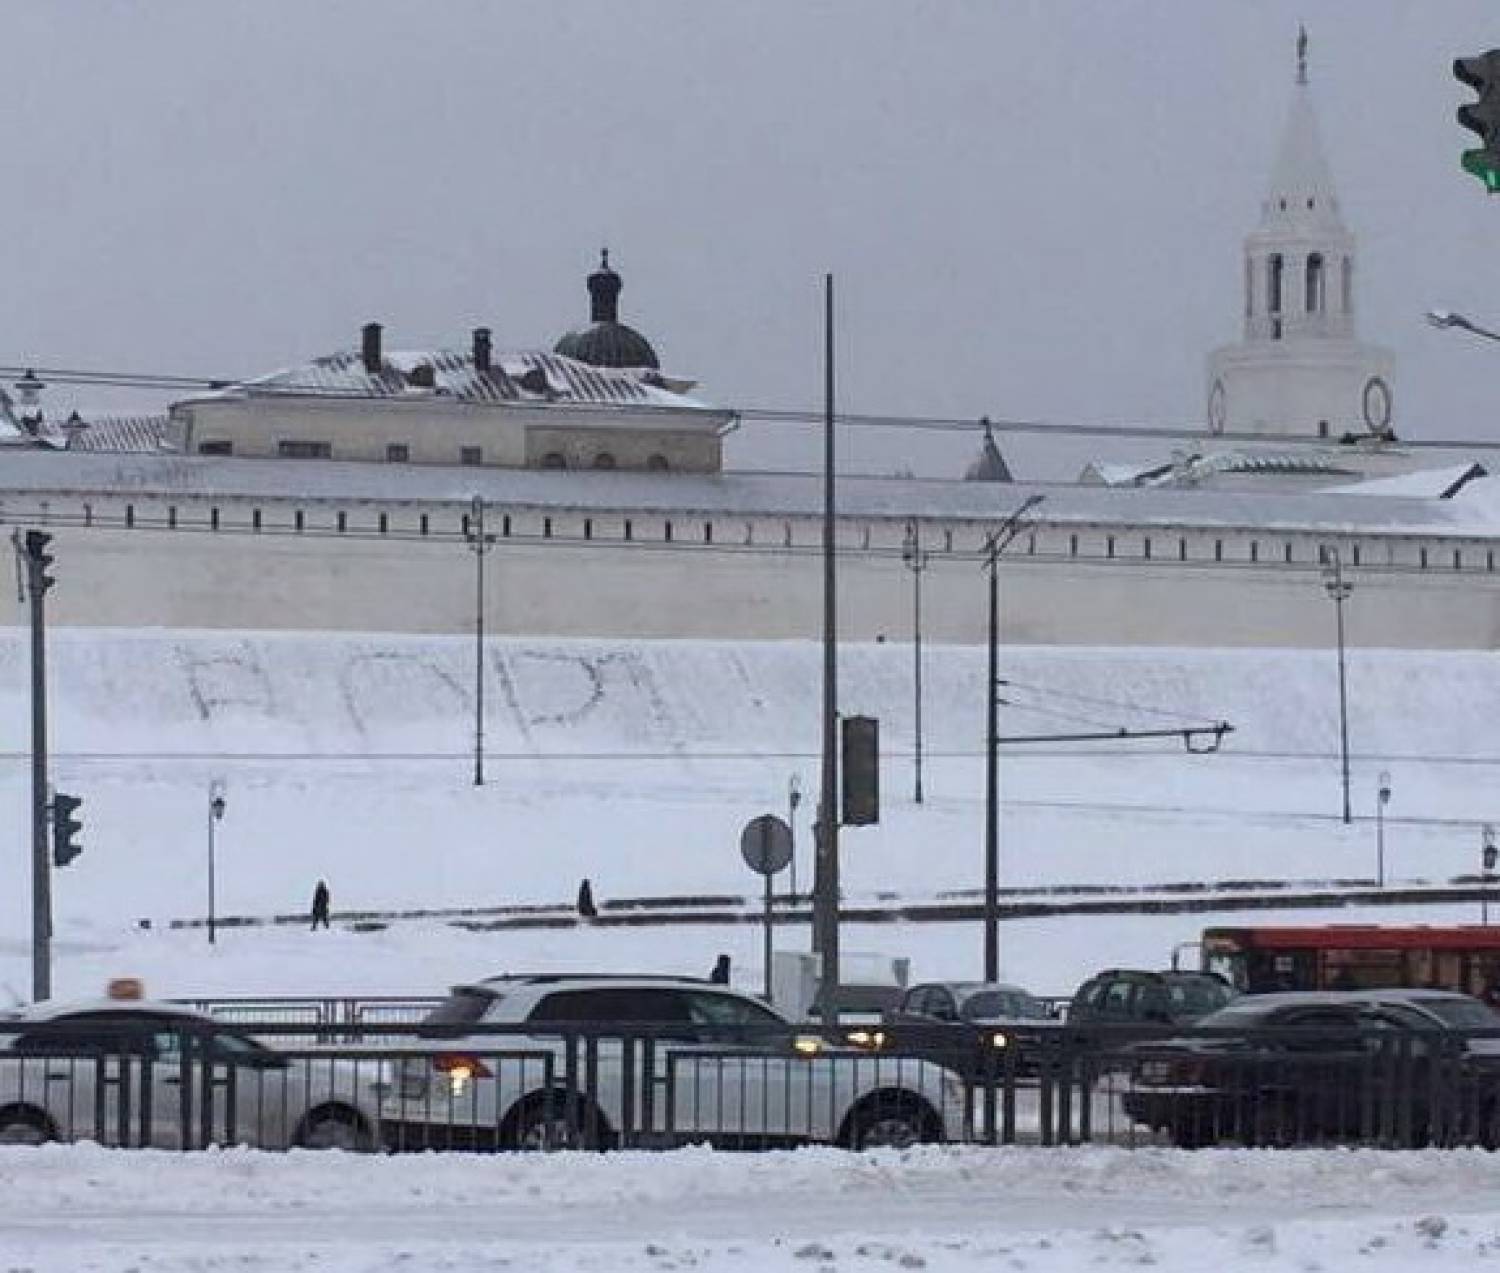 На снегу у Казанского кремля кто-то вытоптал слово "воры", полиция пригрозила уголовным делом